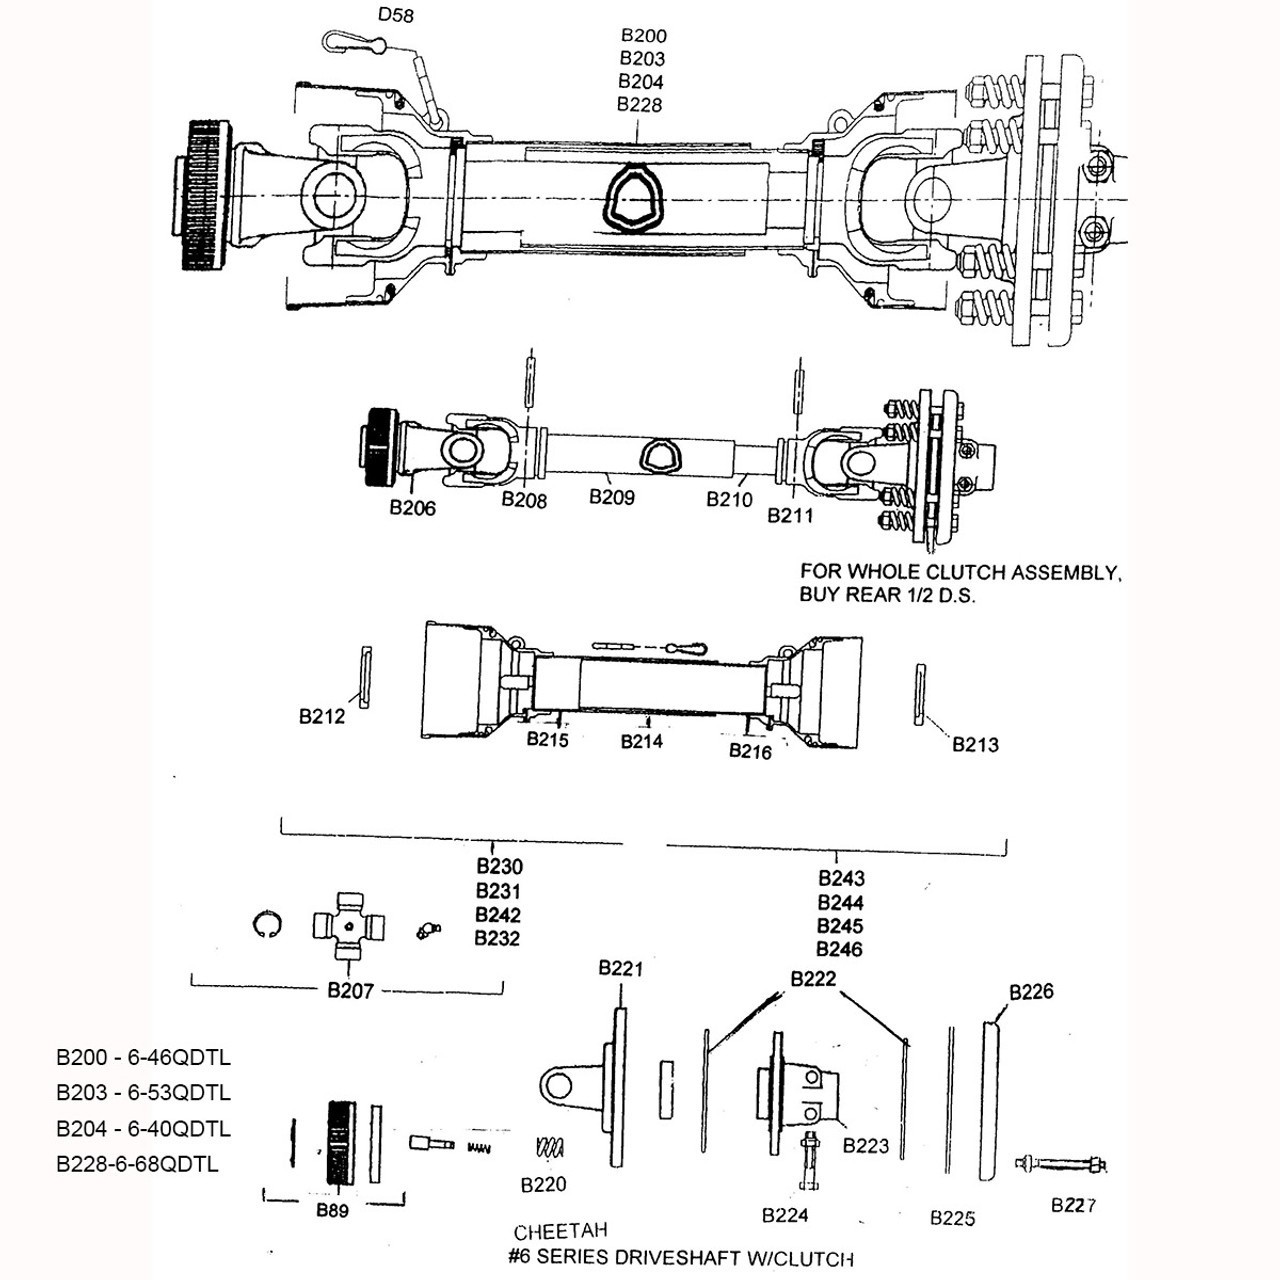 6-68QDTL Parts Diagram